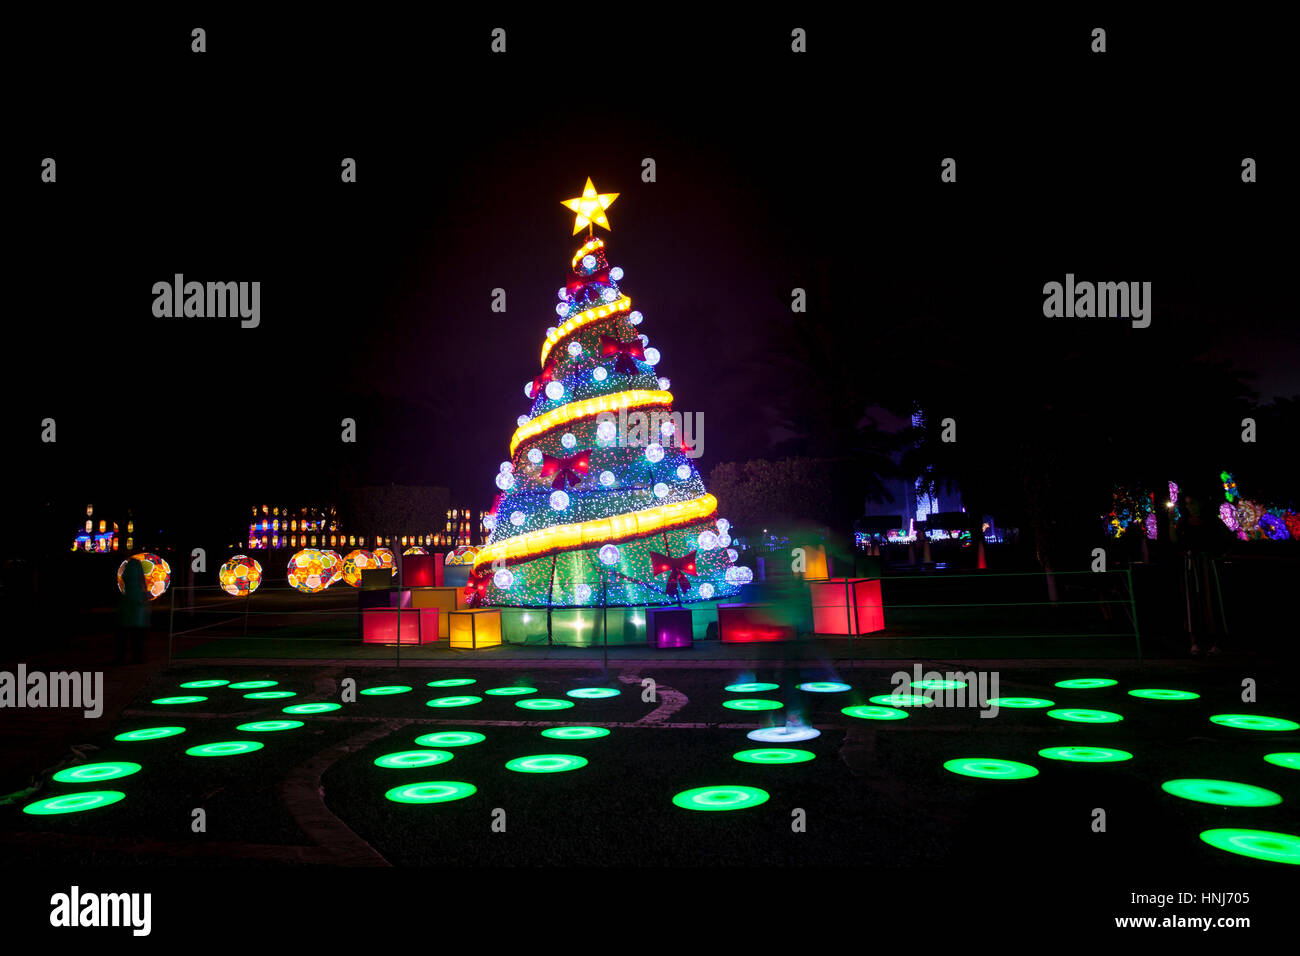 DUBAI, Emirati Arabi Uniti - 6 Dic, 2016: albero di Natale presso il giardino di Dubai Glow family theme park illuminato di notte. Emirati Arabi Uniti, Medio Oriente Foto Stock